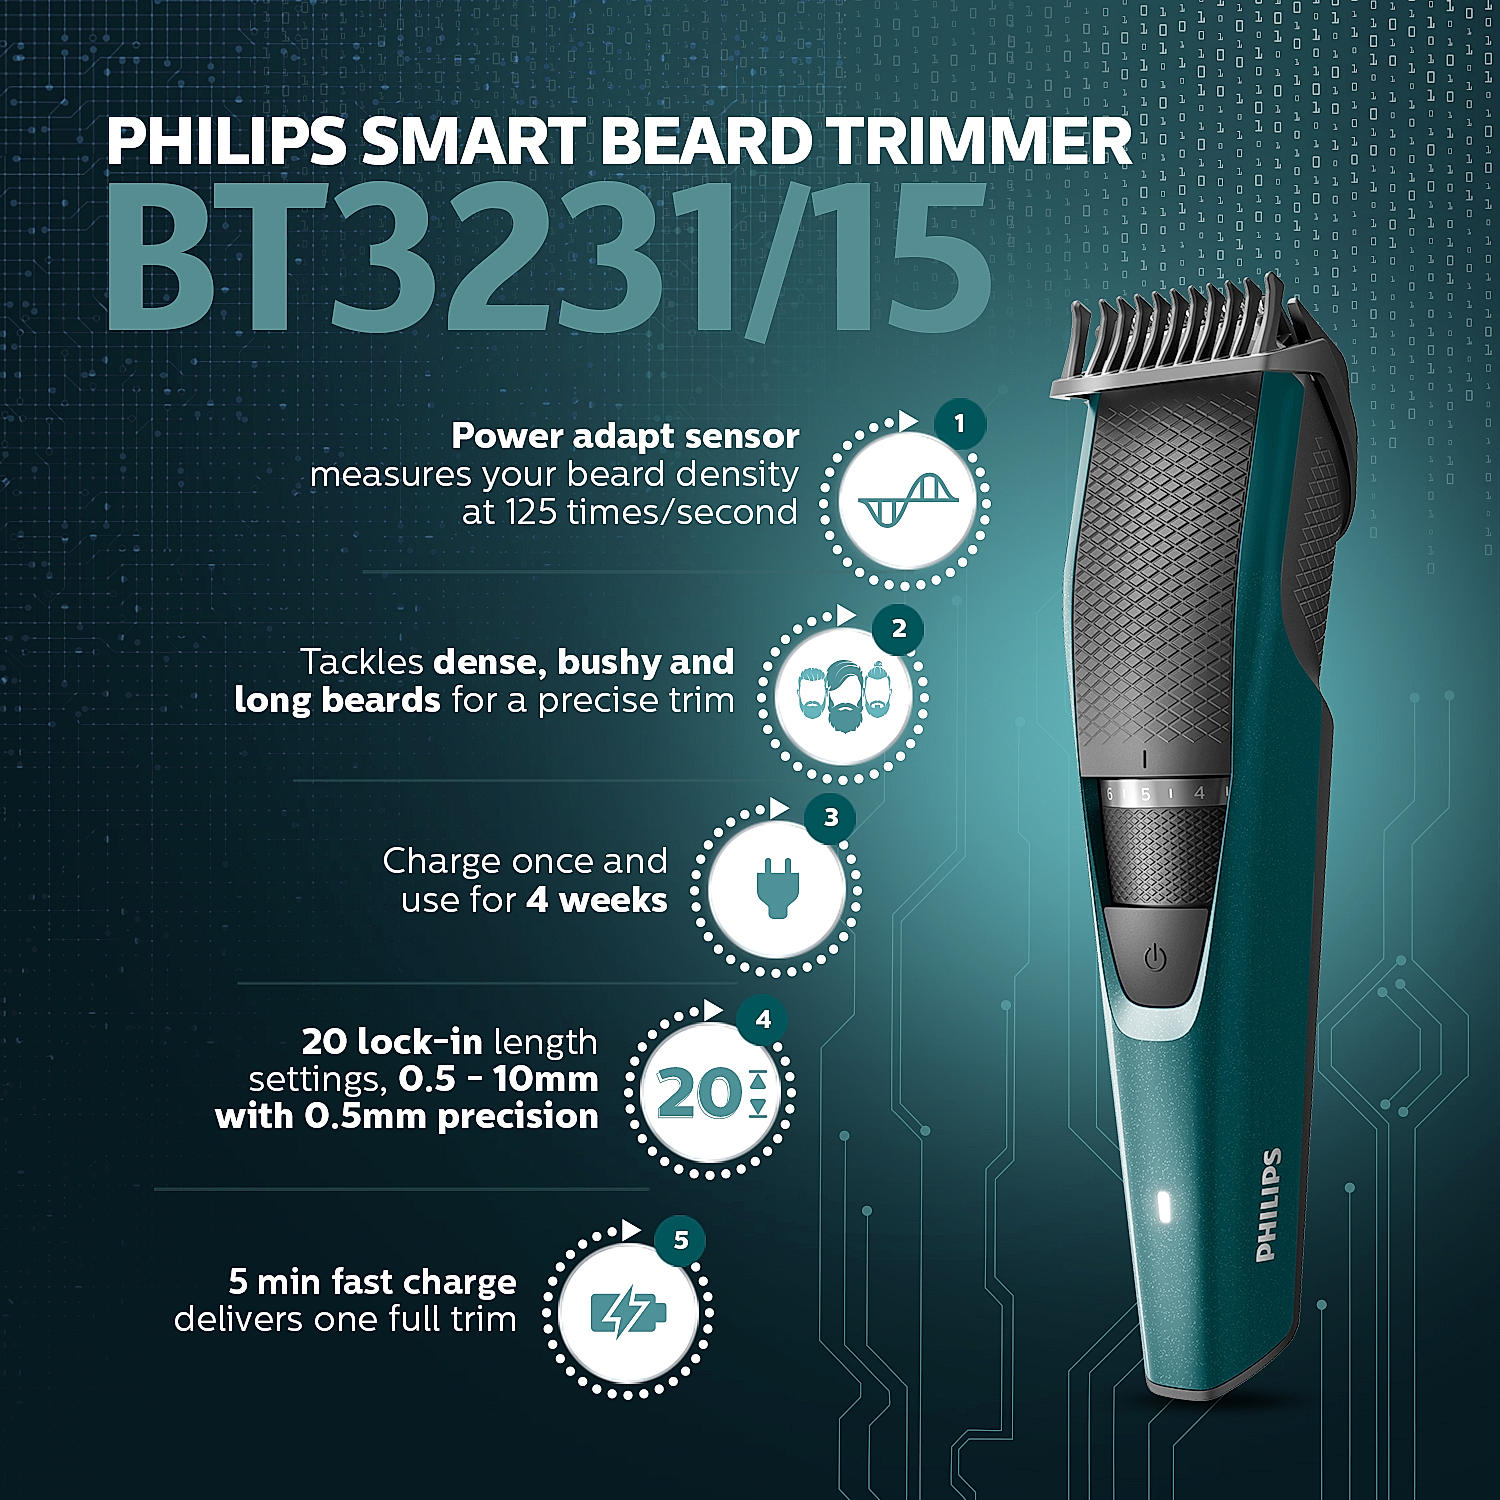 Smart Beard Trimmer, BT3231/15 at Philips E-shop